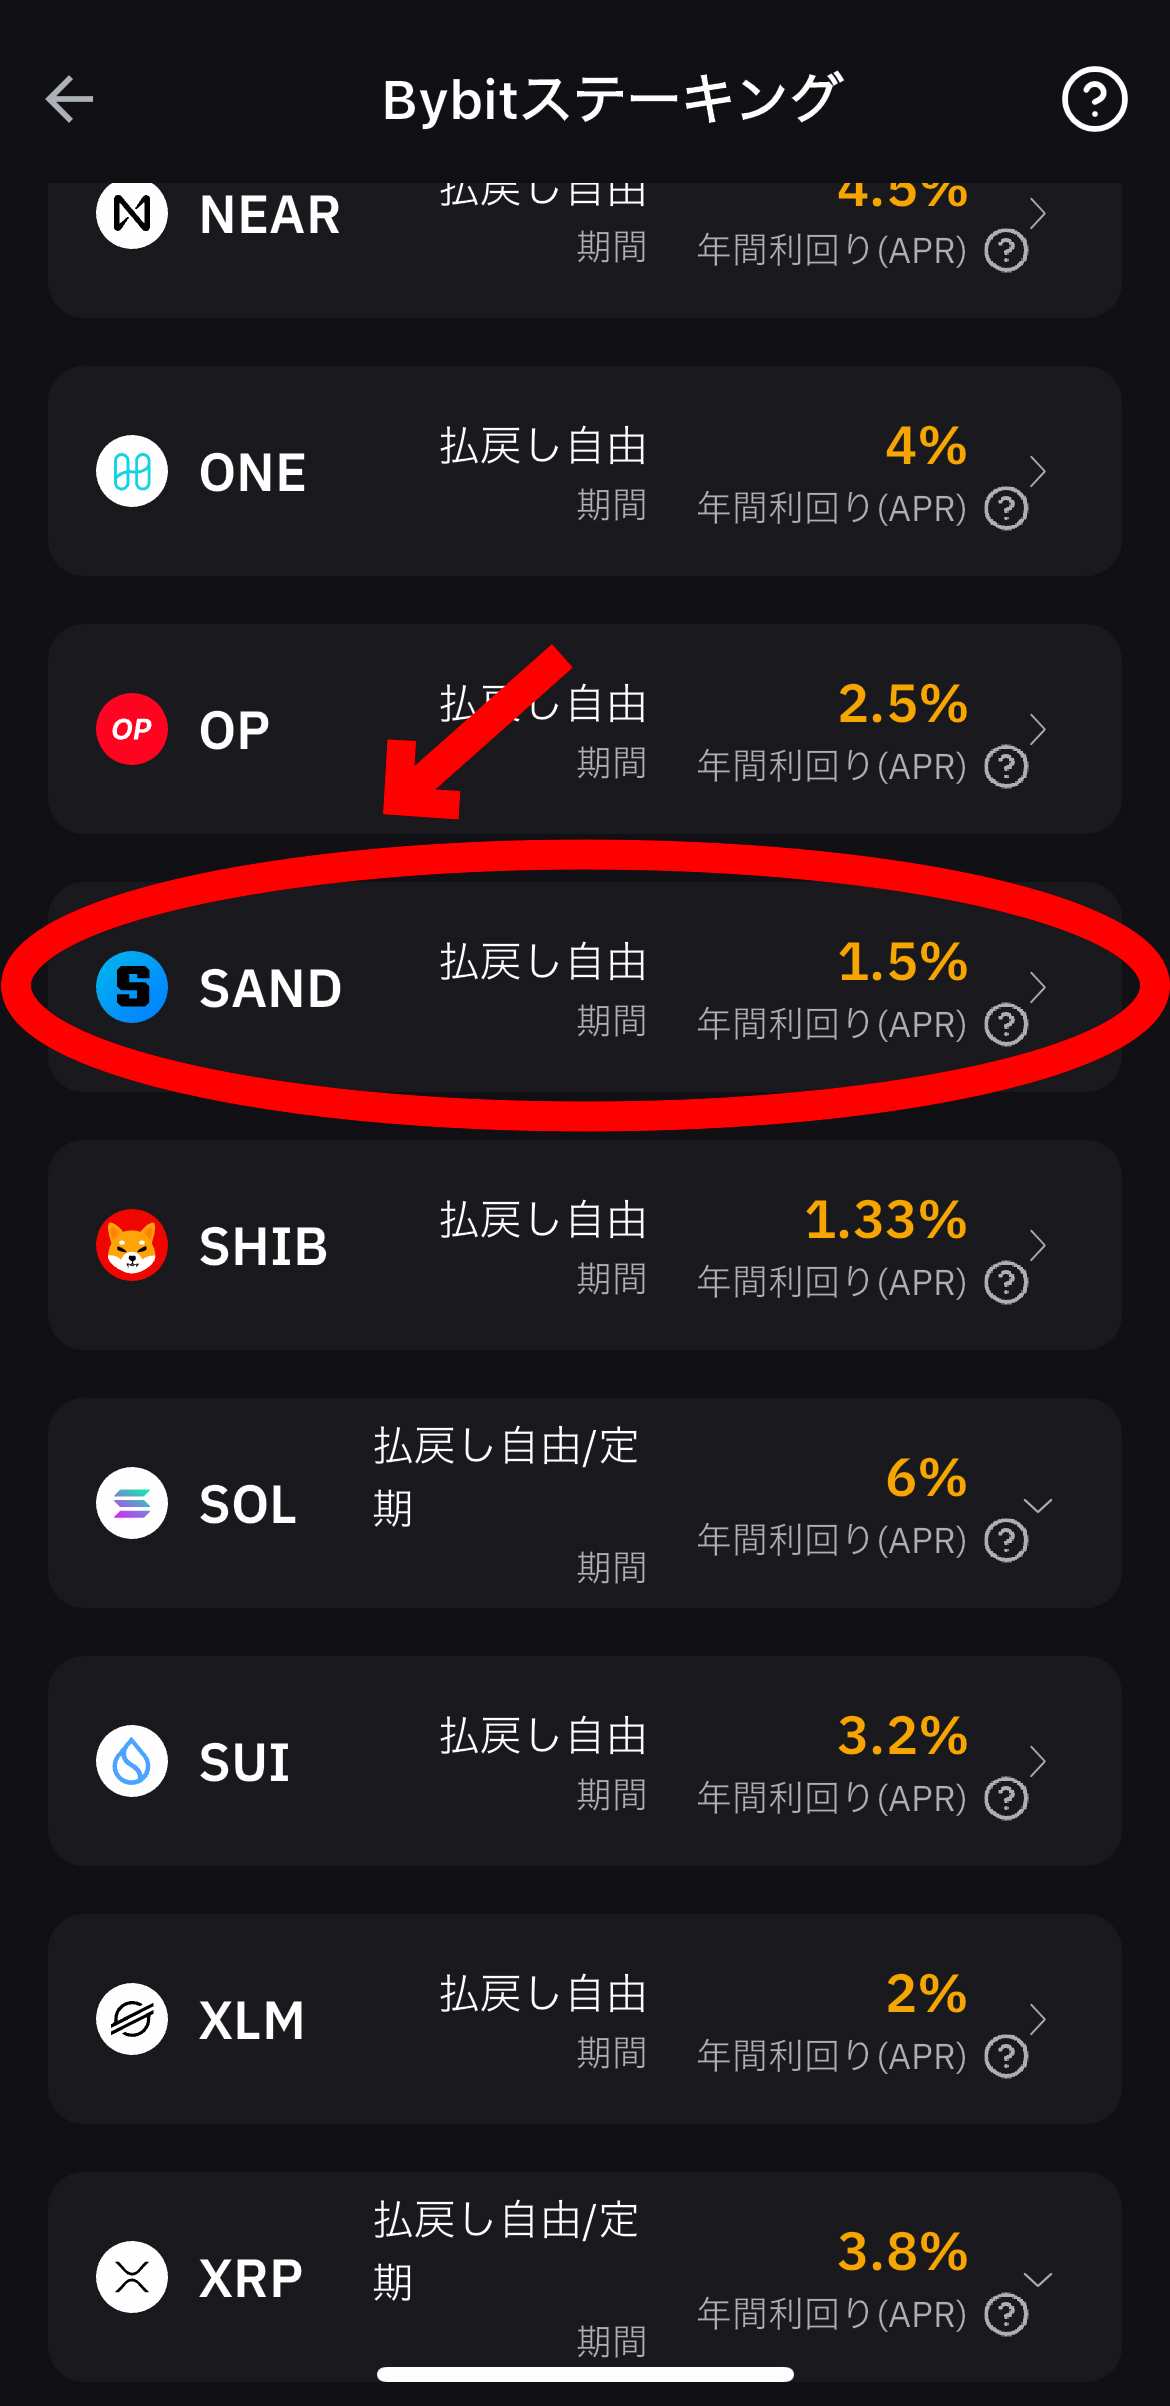 サンドボックスのステーキング方法【Bybit】【バイビット】【SAND】【The Sandbox】【仮想通貨】SANDを選択します